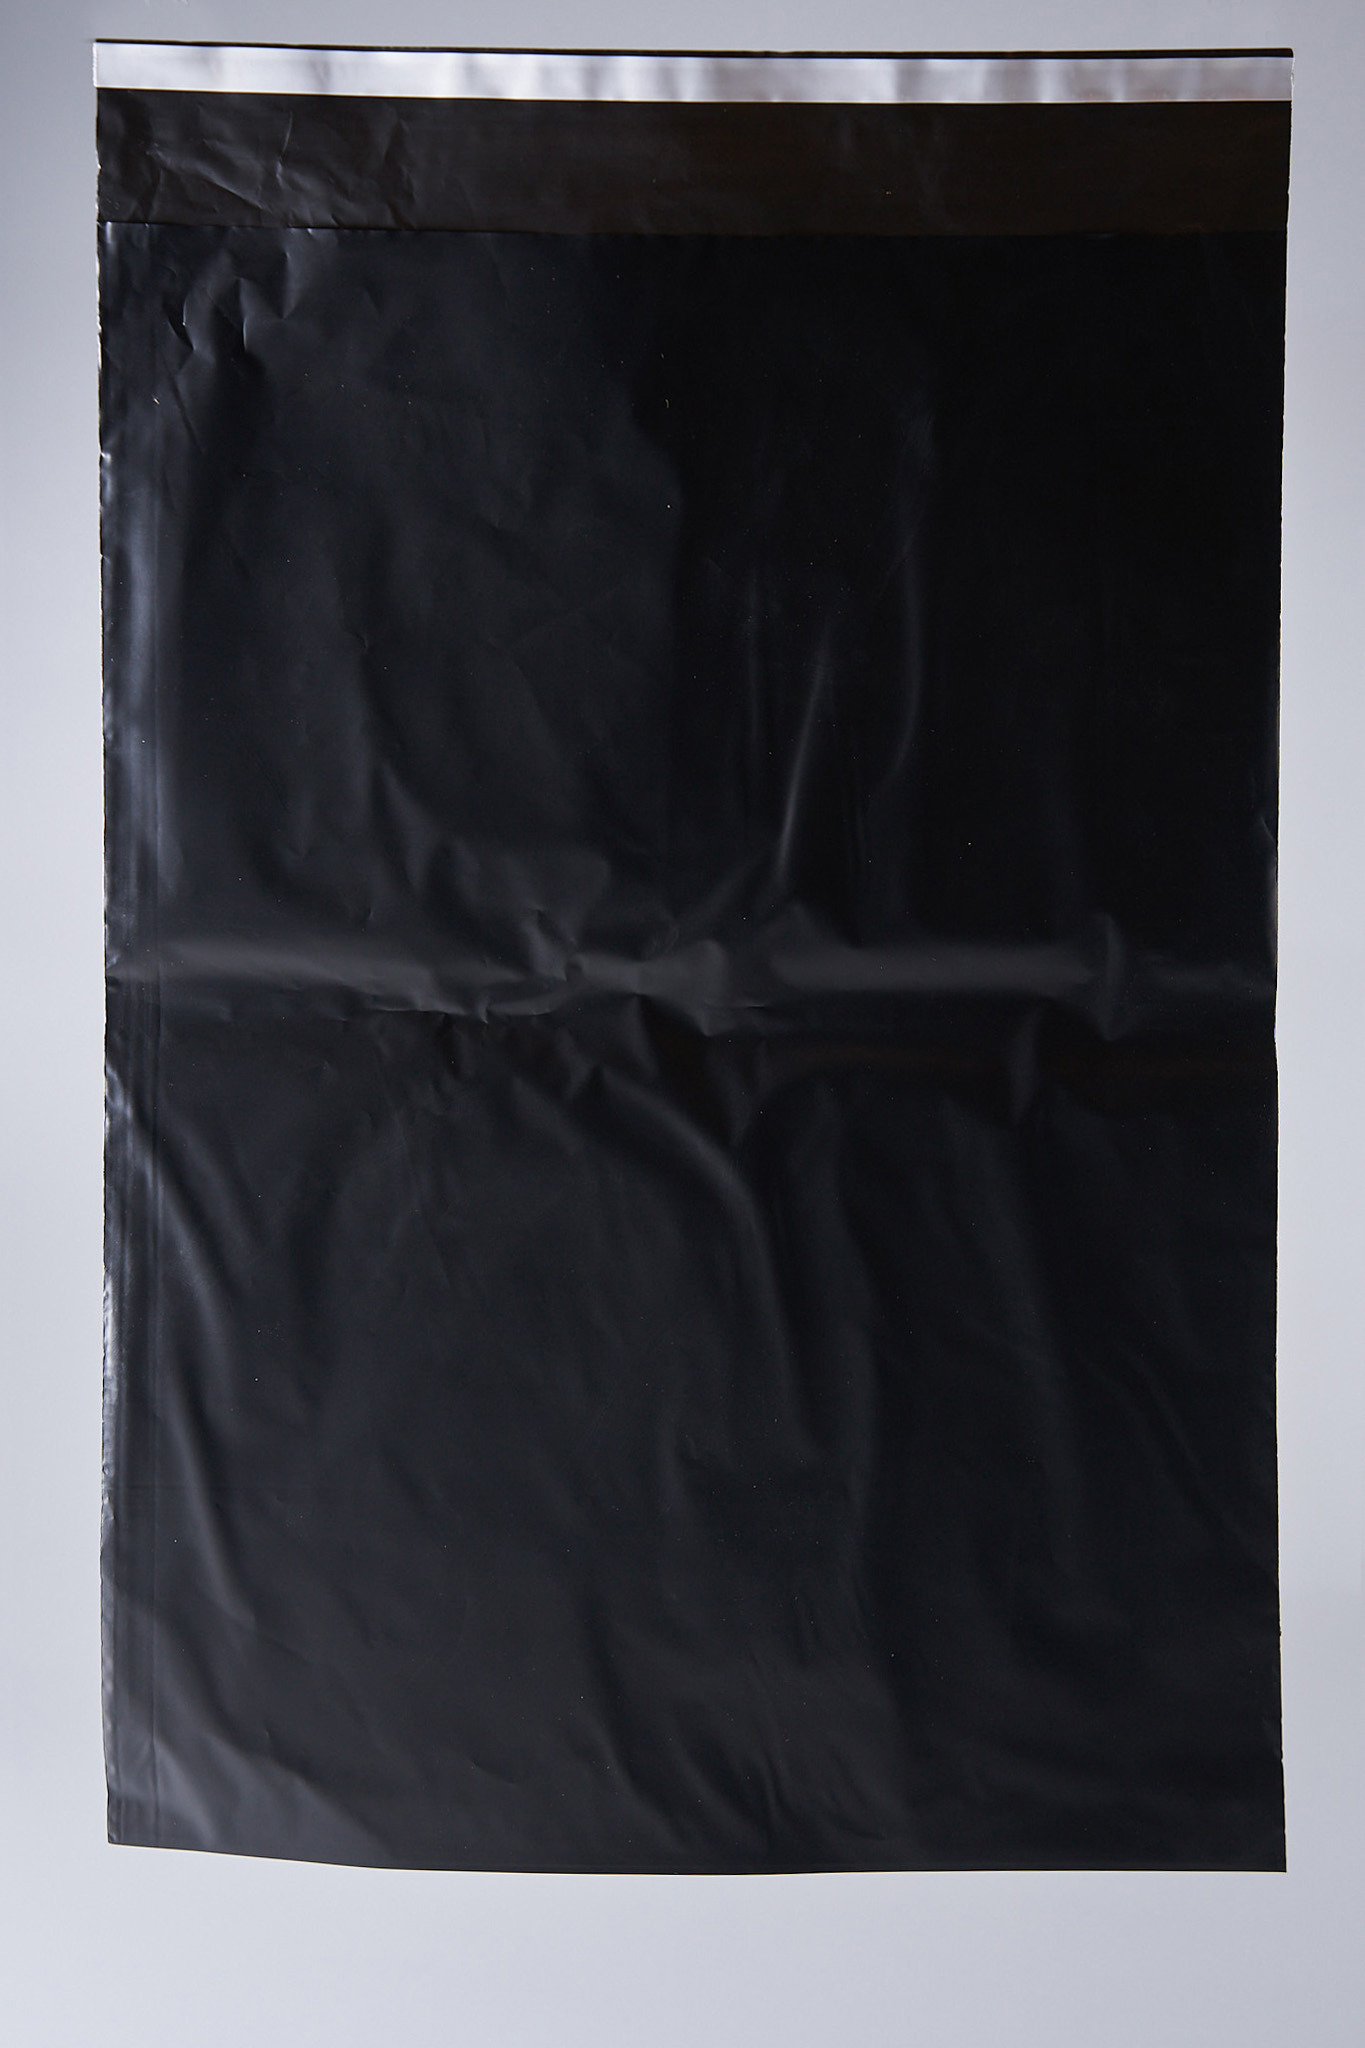 91017056 Пакет для компактного хранения 500 шт 34x46 см полиэтилен цвет черный STLM-0443014 PACK INNOVATION